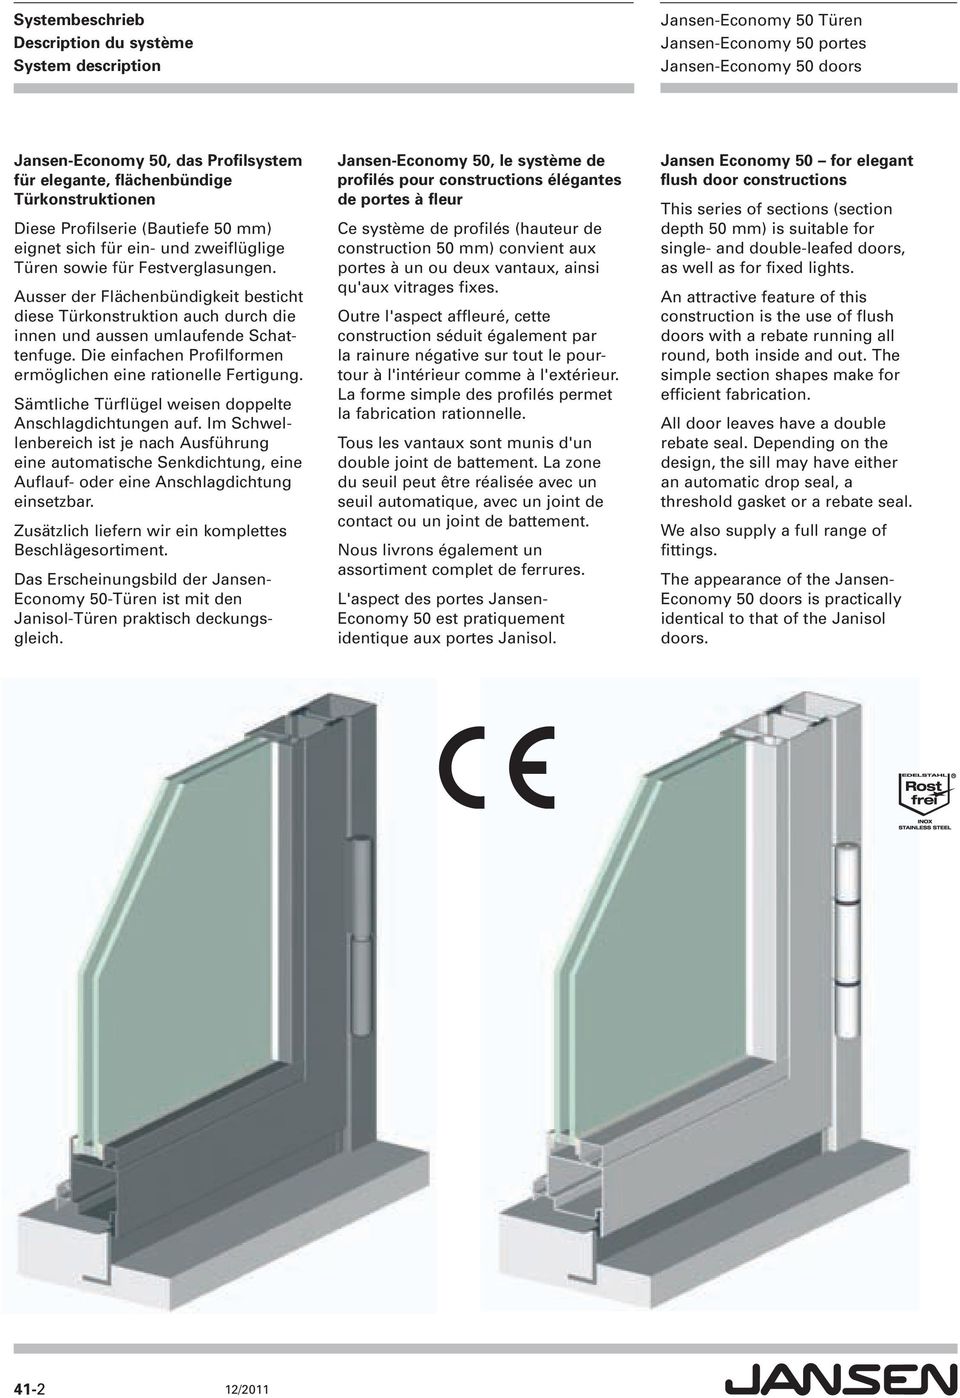 Die einfachen Profilformen ermöglichen eine ra tio nel le Fertigung. Sämtliche Türflügel weisen doppelte Anschlagdichtungen auf.